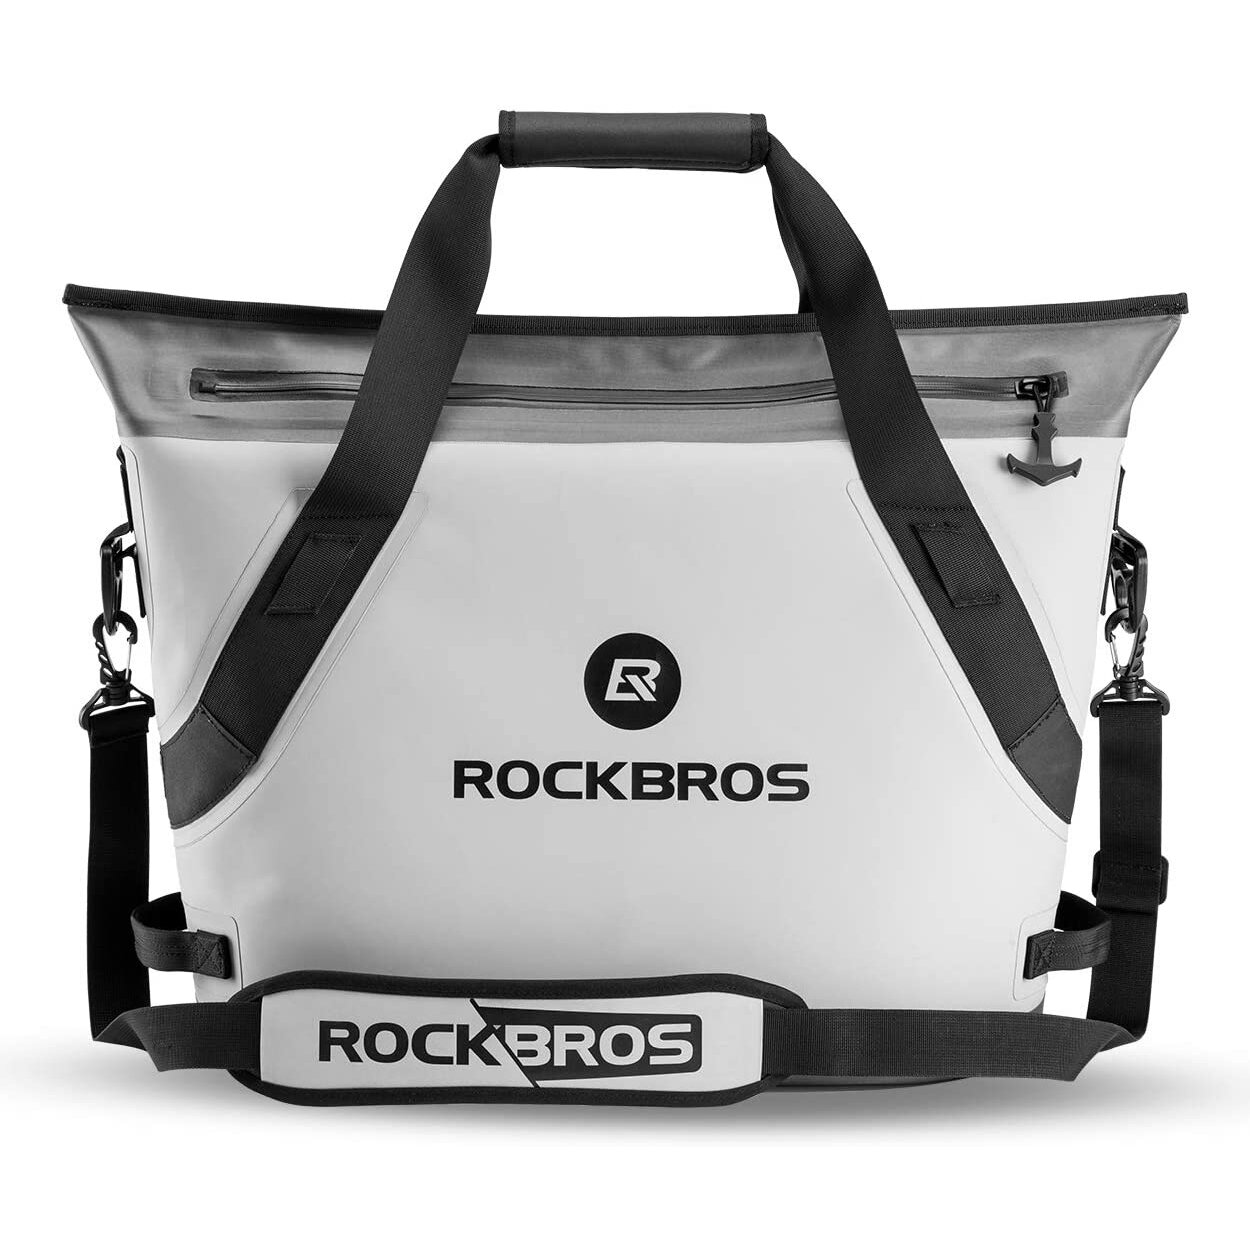 Sac isotherme ROCKBROS BX-003 de 22L, étanche, avec glace, pour le déjeuner, le camping, le pique-nique, isolé thermiquement avec feuille, sac à main.